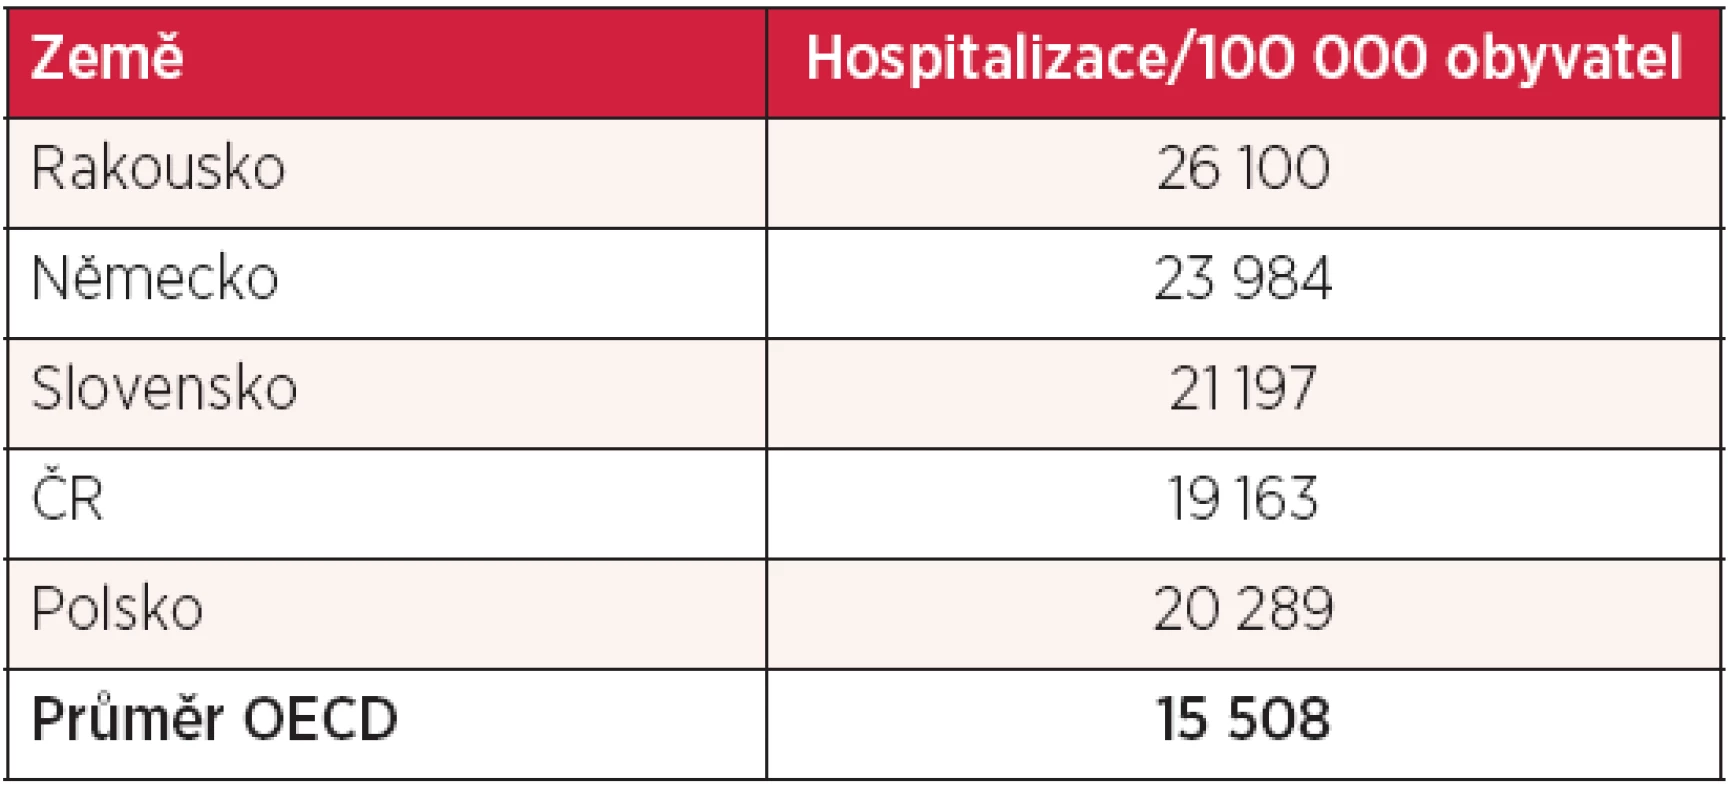 Počty hospitalizací na 1000 obyvatel